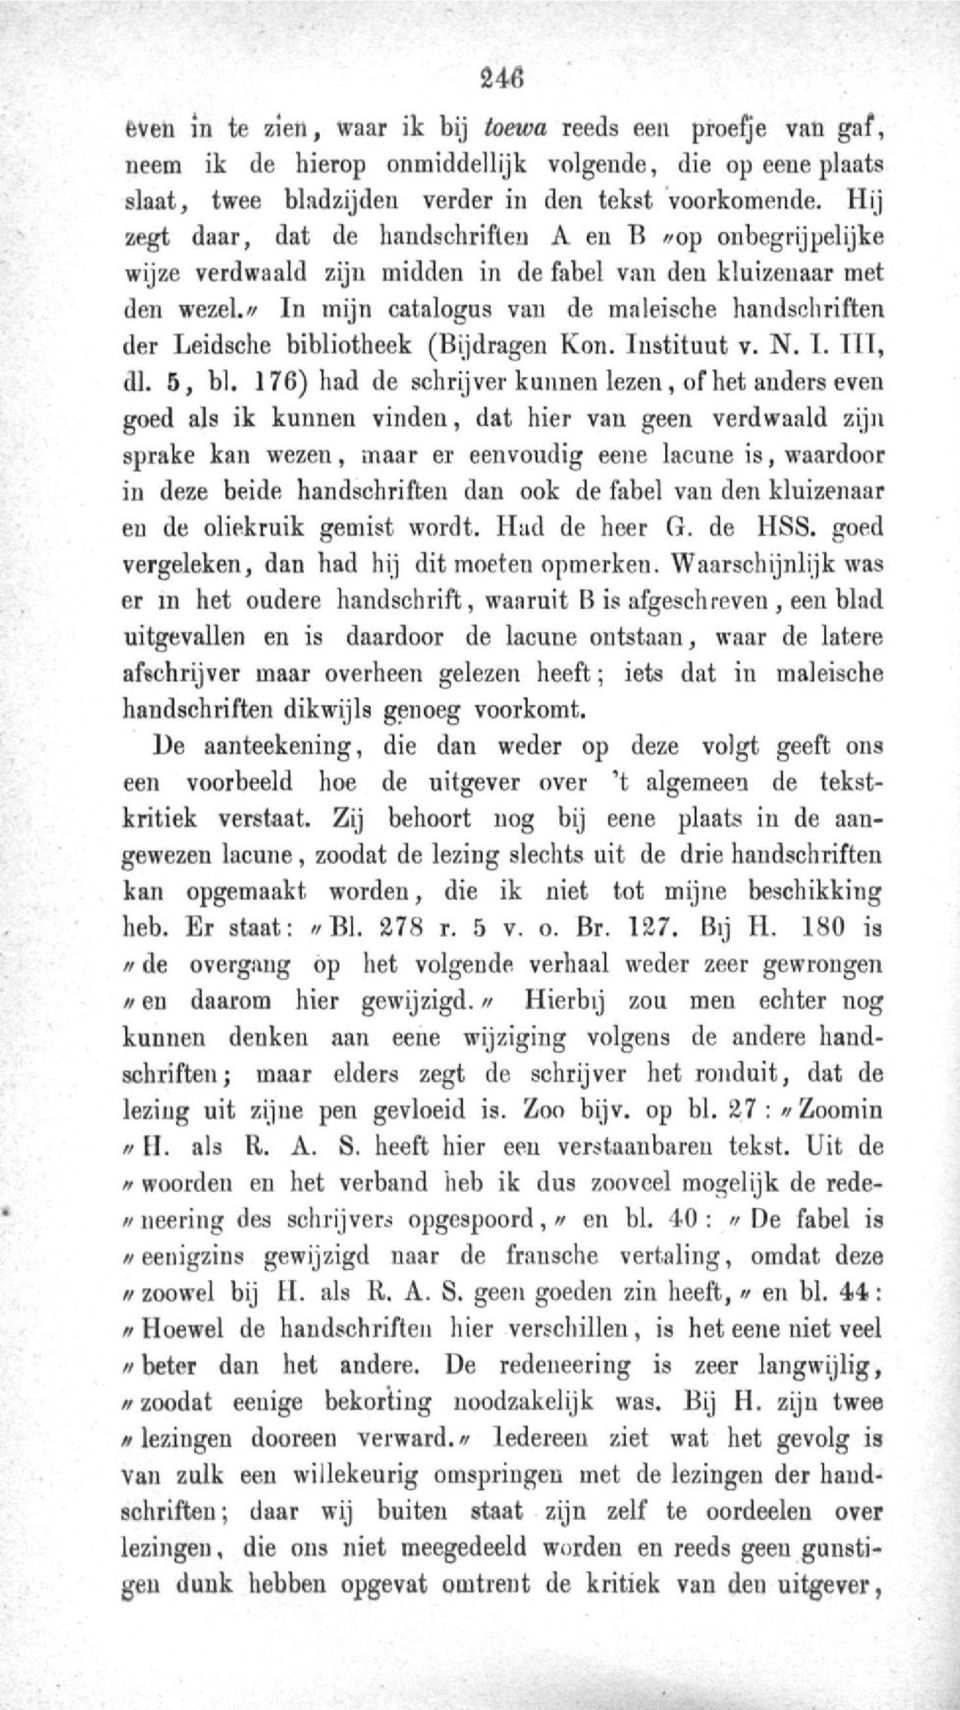 '/ In mijn catalogus van de maleische handschriften der Leidsche bibliotheek (Bijdragen Kon. Instituut v. N. I. TIT, dl. 5, bl.